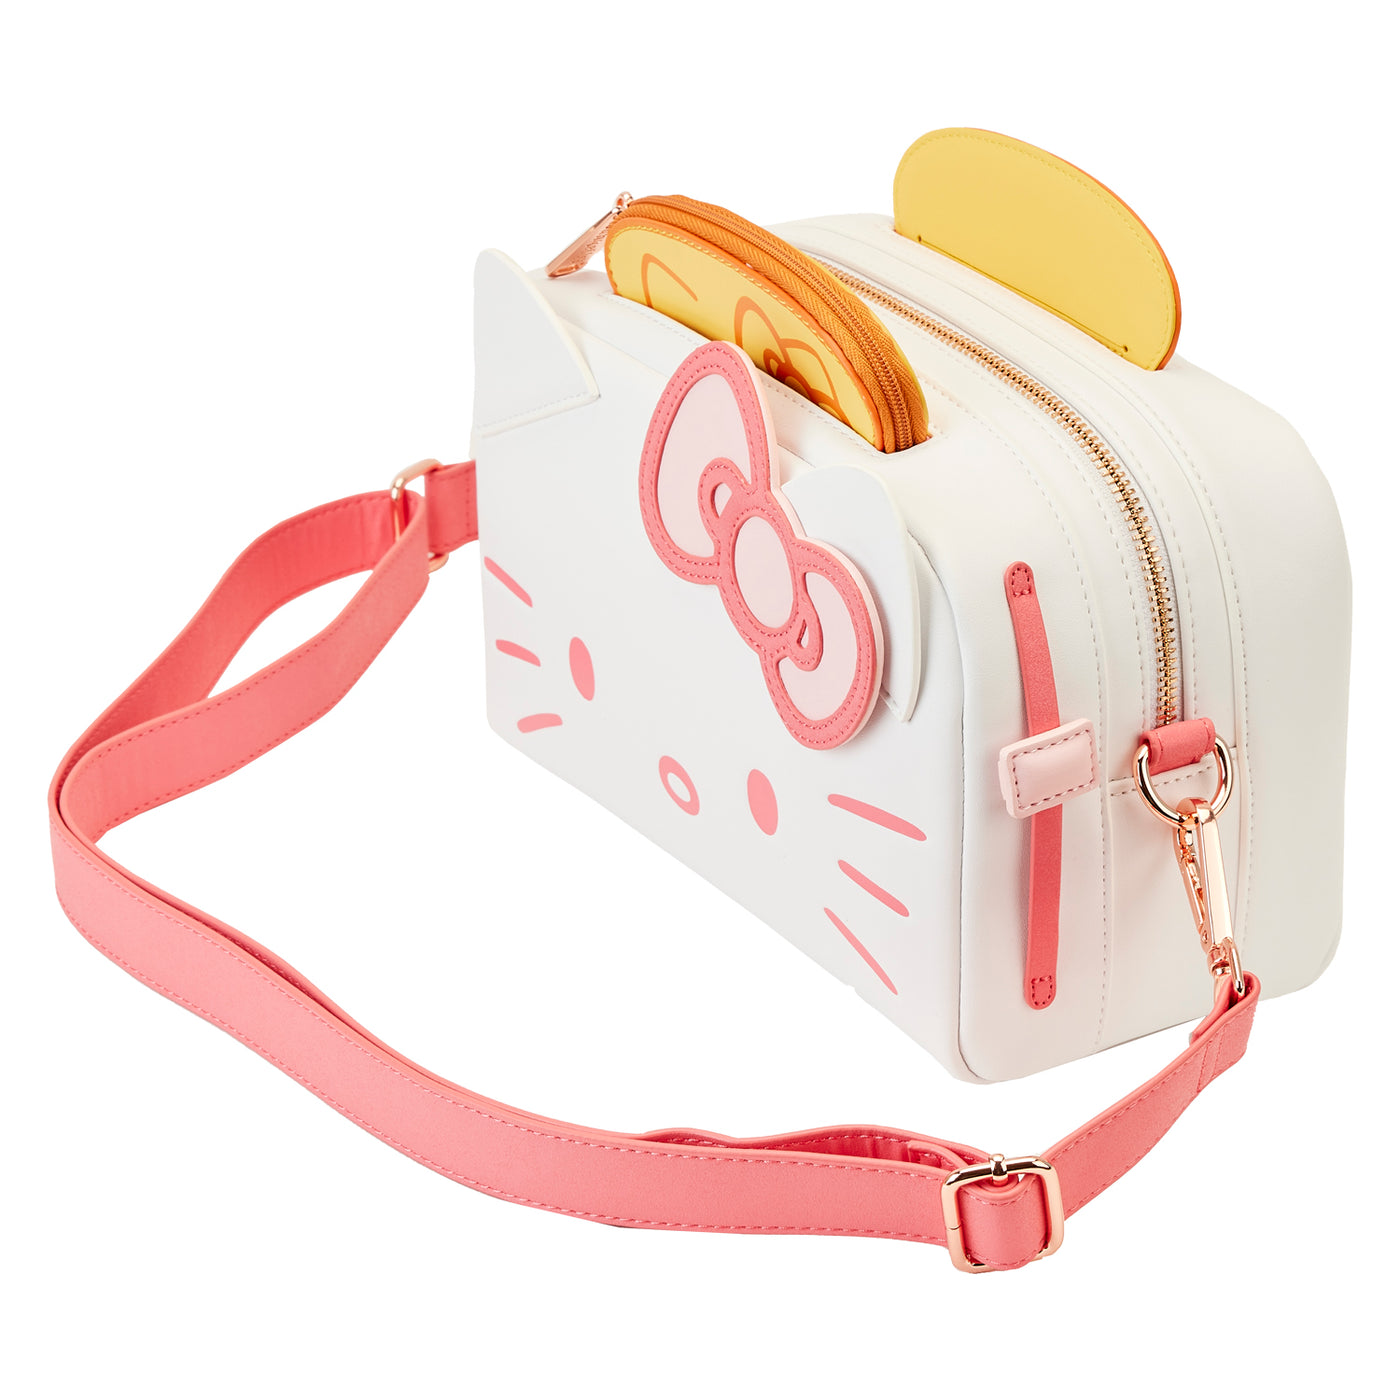 Sanrio Hello Kitty Breakfast Toaster Crossbody